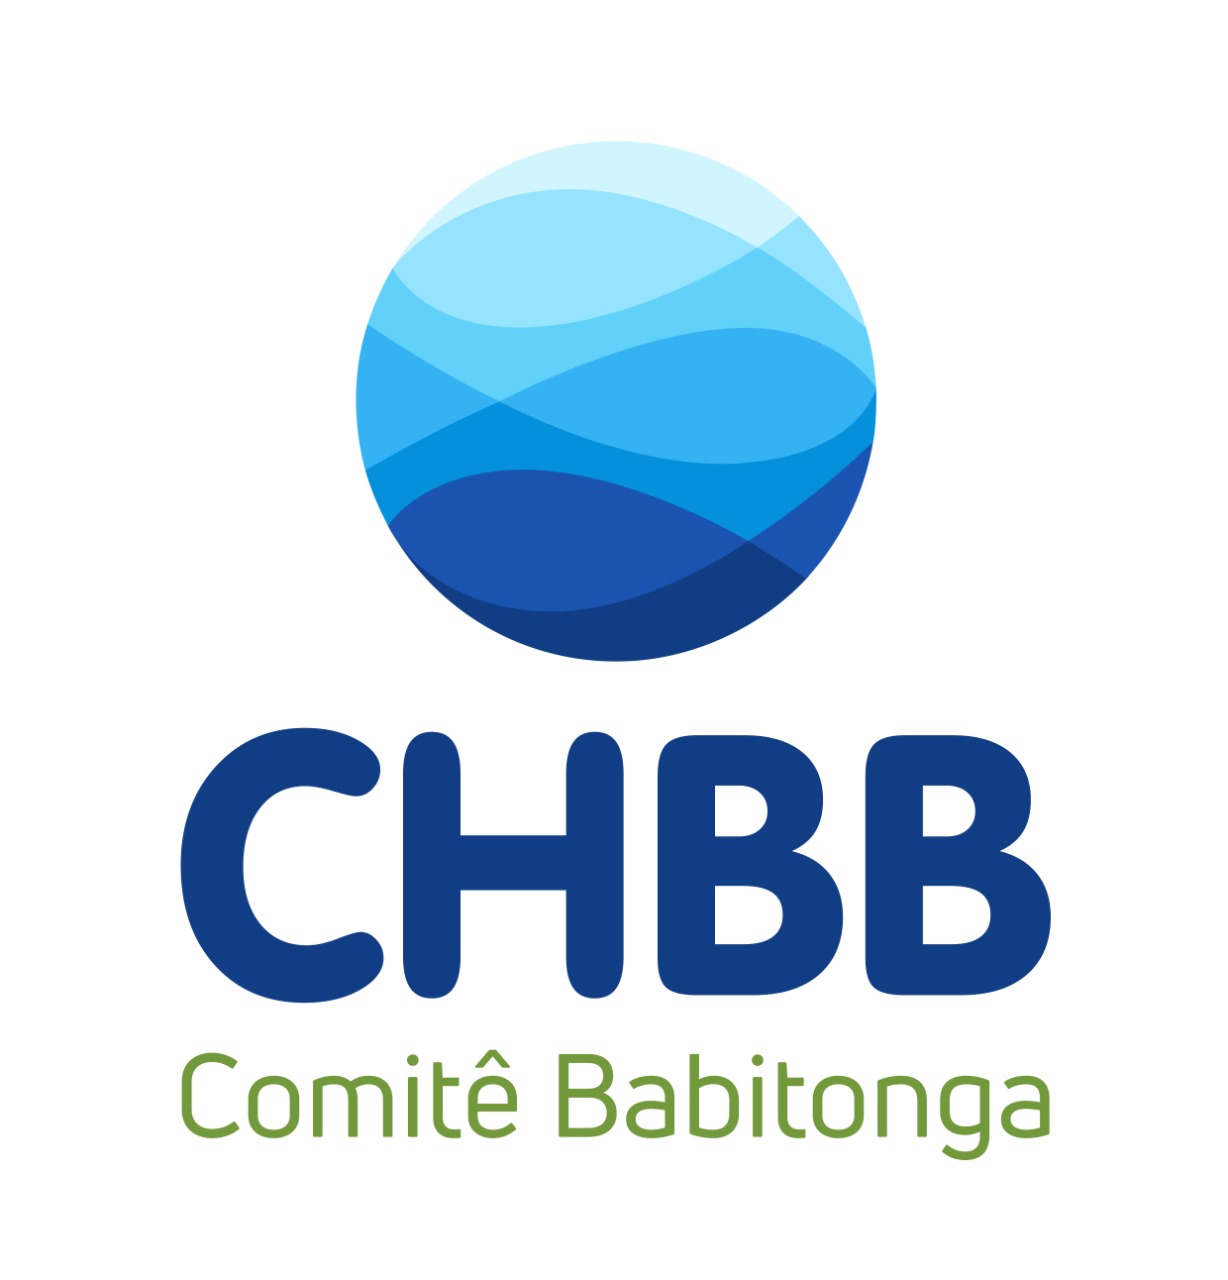 Comitê Babitonga promove atividade de coleta de resíduos na bacia do rio Cubatão, mesma ação denominada World Cleanup Day